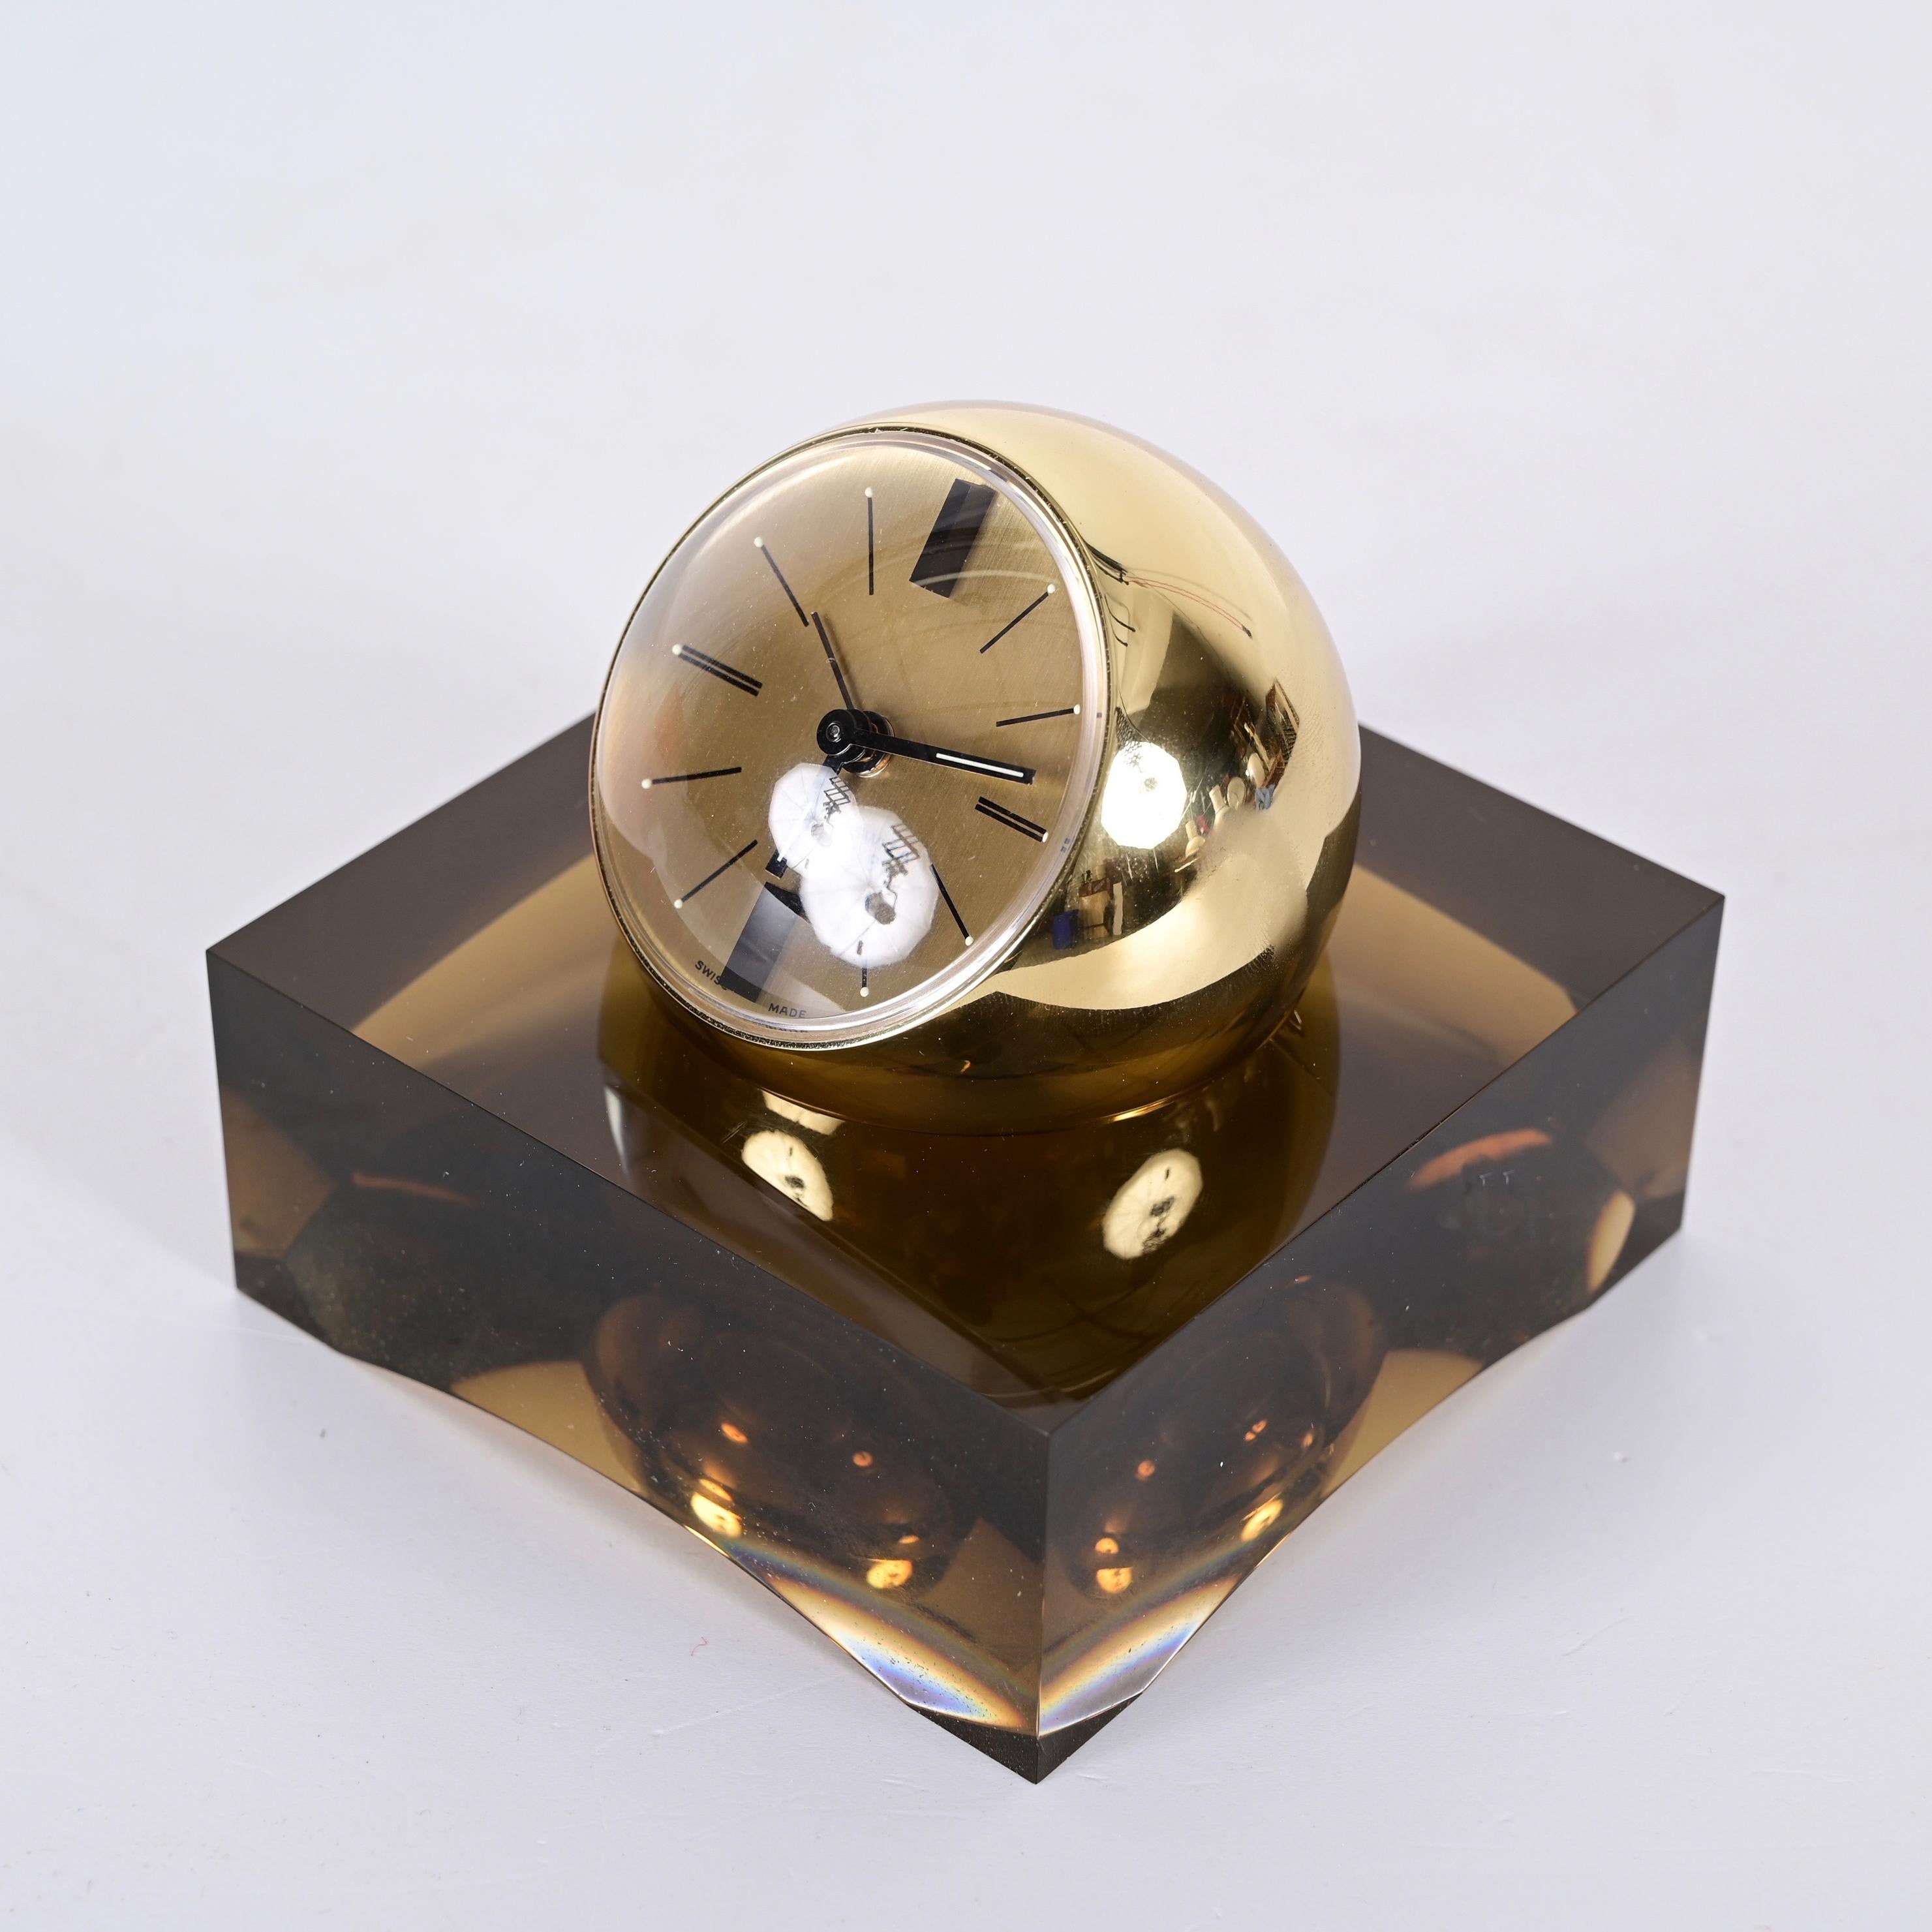 En 1975, la prestigieuse société horlogère suisse Swiza a choisi cette montre comme protagoniste solitaire de sa campagne publicitaire dans les magazines. Vous pouvez voir pourquoi. Moderne et unique en son genre, elle comporte une horloge à boule